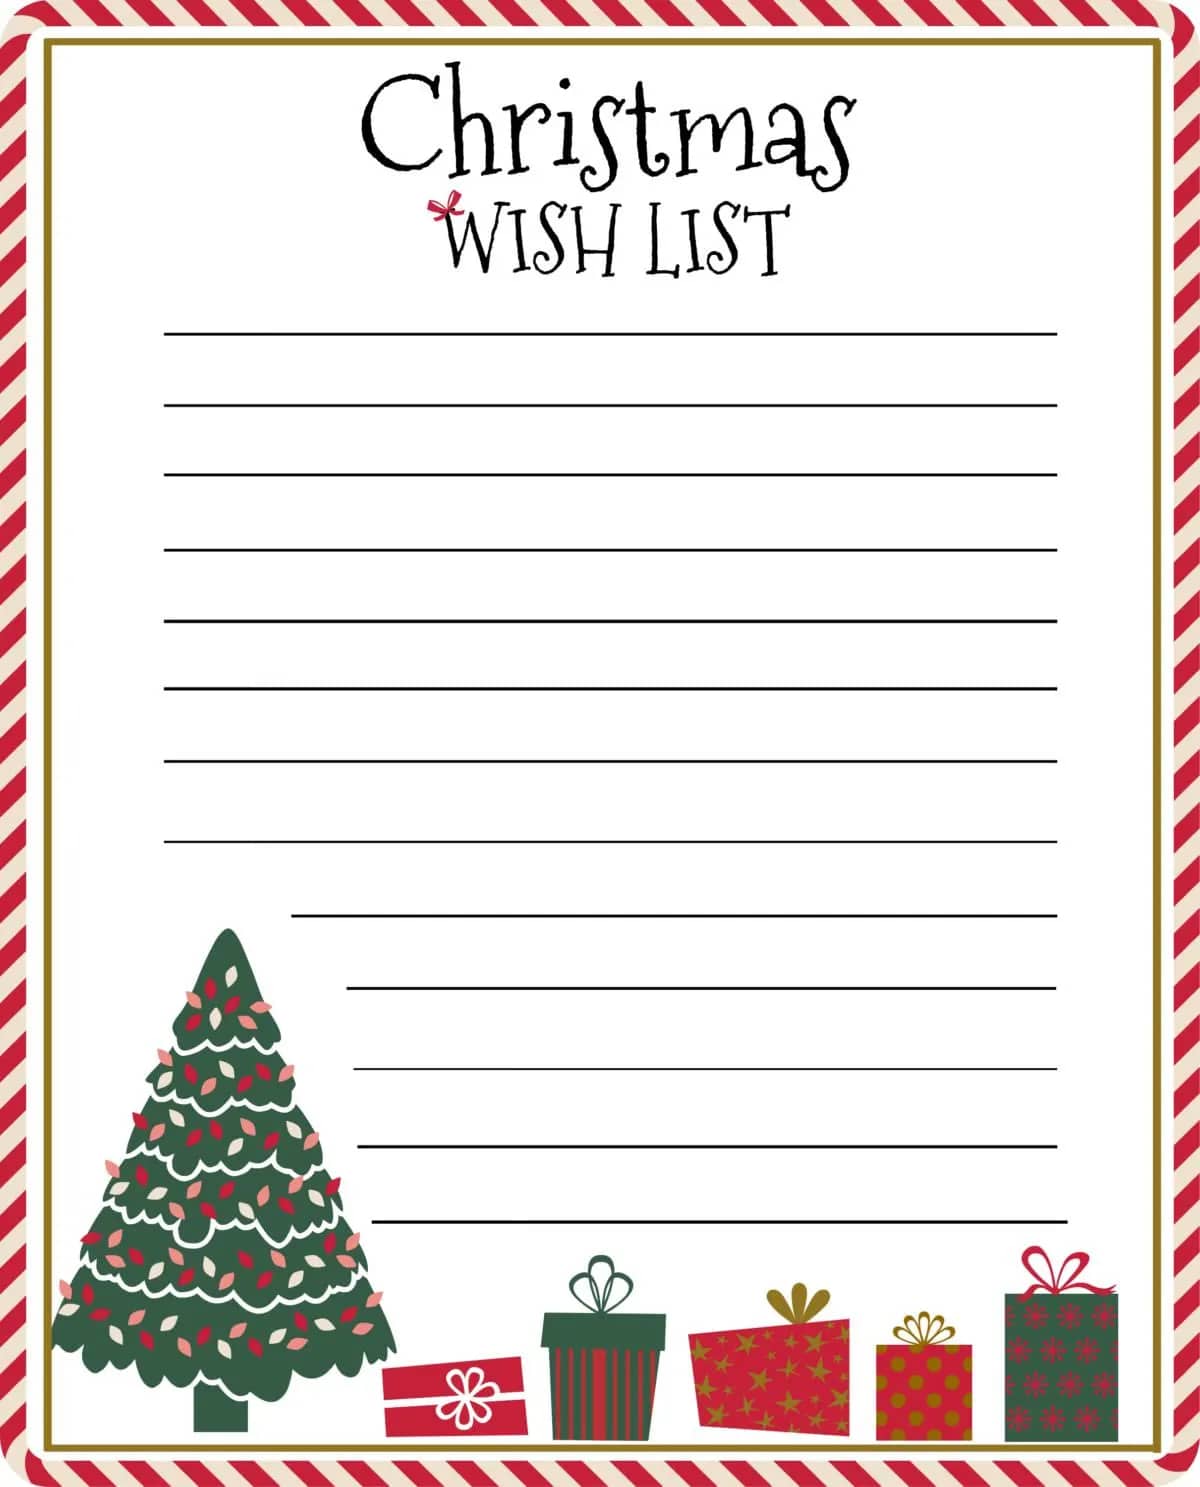 Printable Christmas Wish List Templates_52199